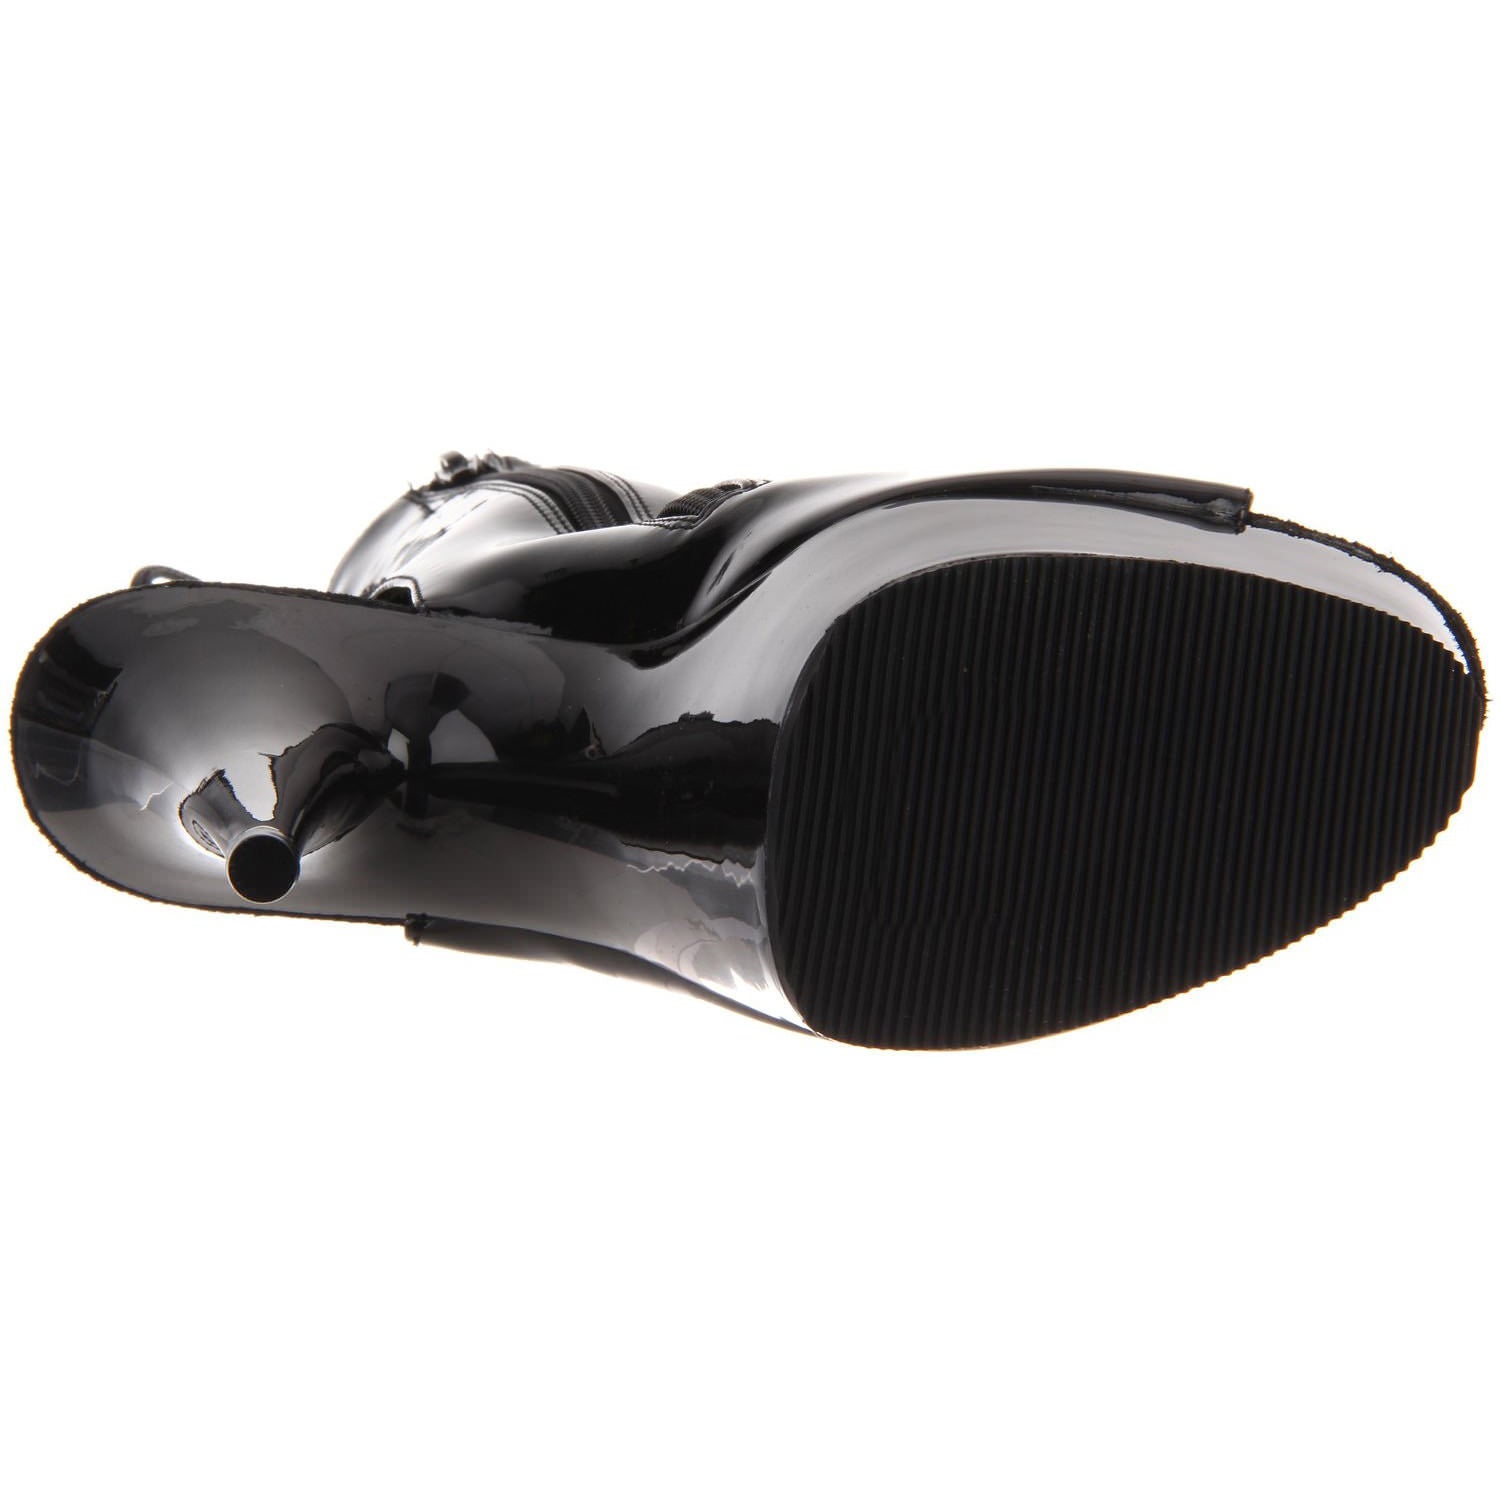 PLEASER DELIGHT-1018 Black Pat Ankle Boots - Shoecup.com - 7